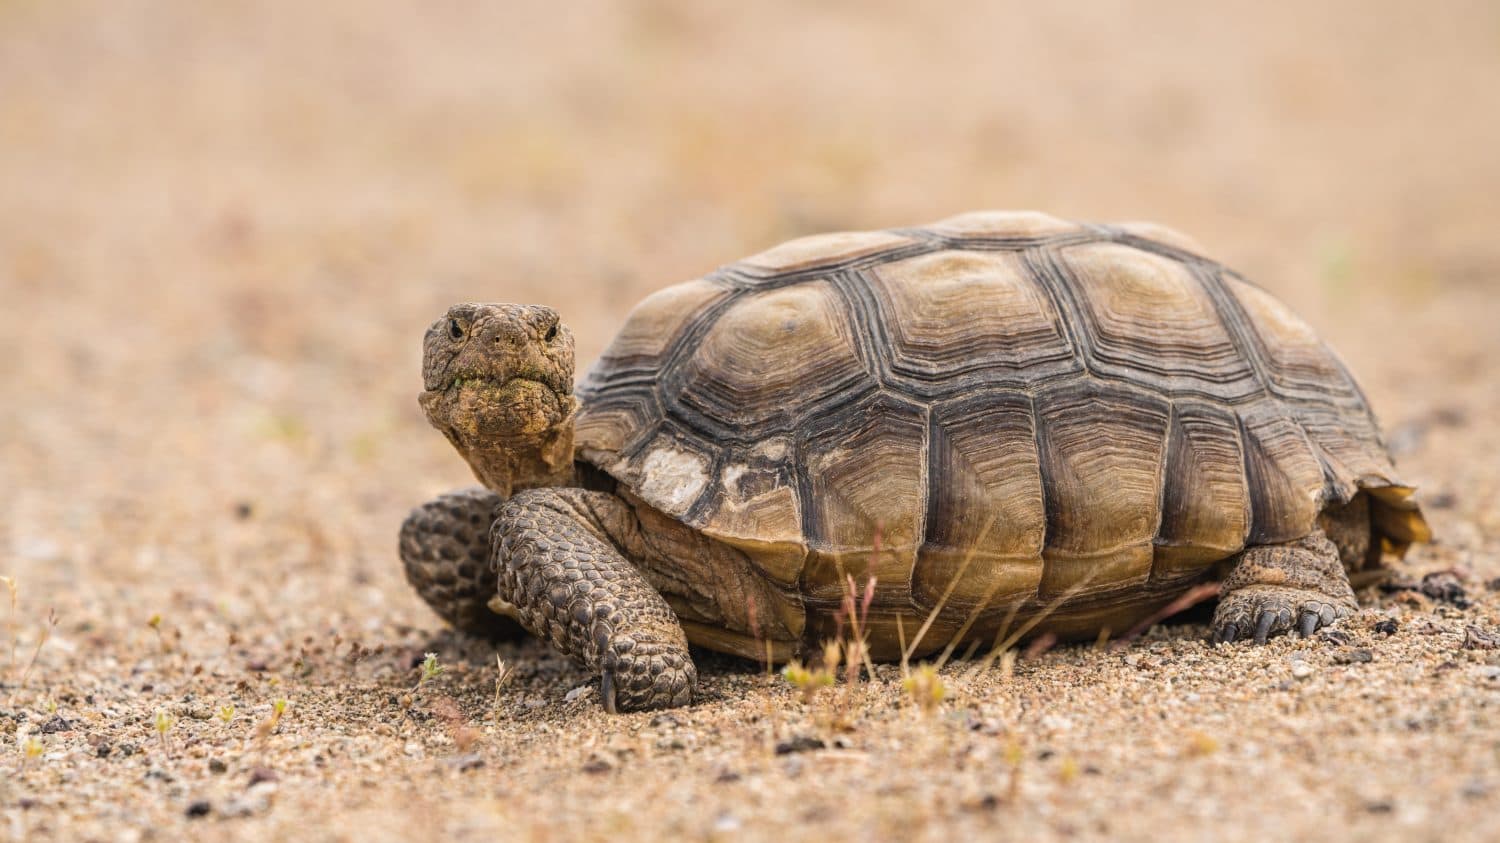 Una tartaruga selvaggia del deserto o Gopherus agassizii, sul pavimento sabbioso del deserto nel deserto del Mojave, California.